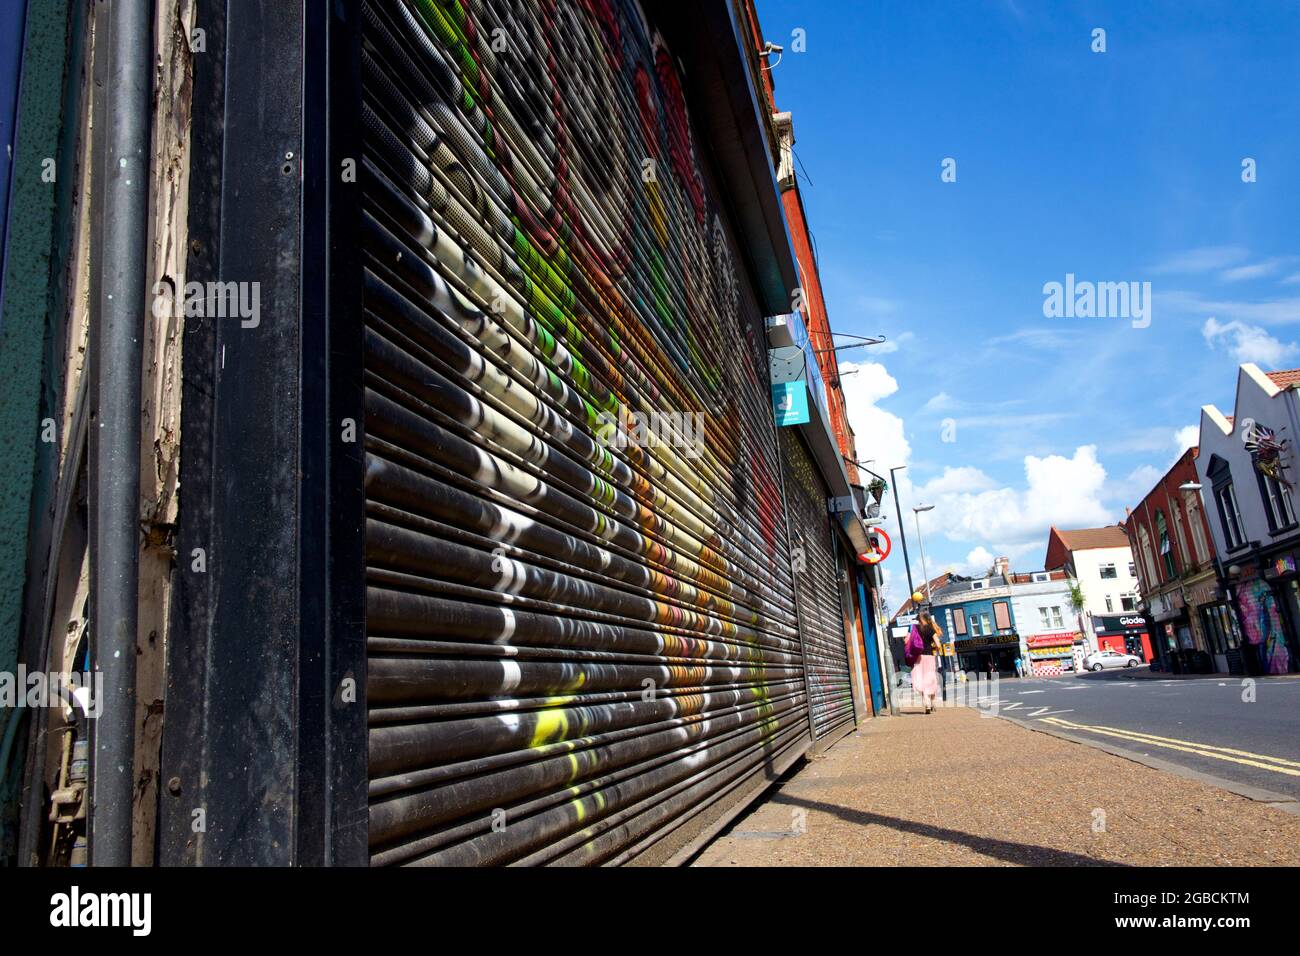 Magasins avec volets dans une rue haute, Royaume-Uni Banque D'Images